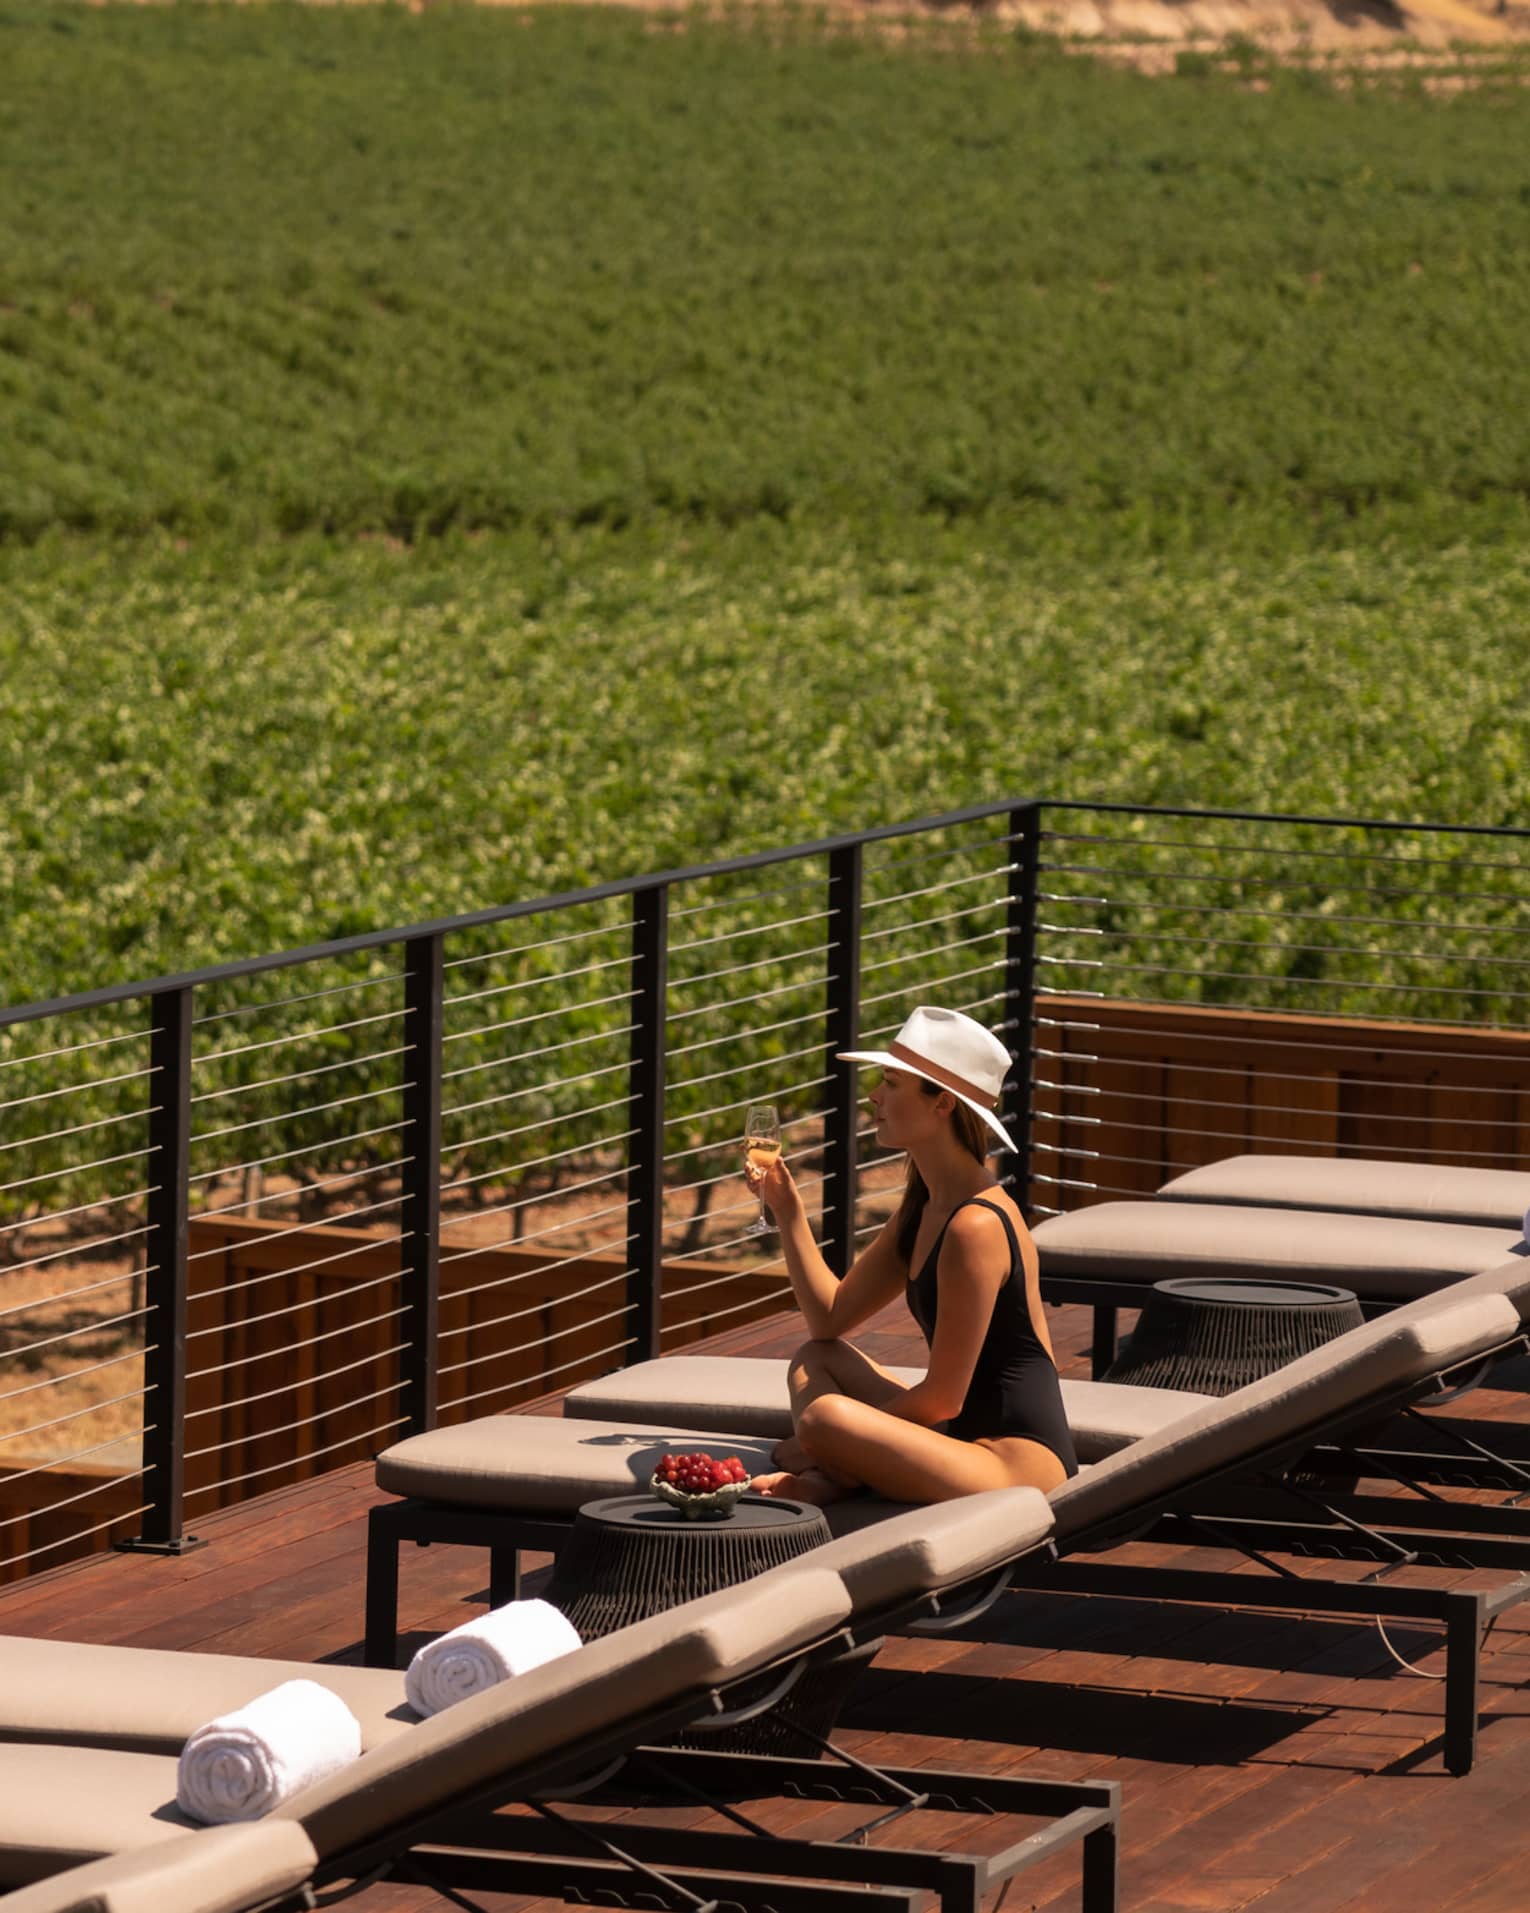 Woman on sun lounger, overlooking wine vineyards